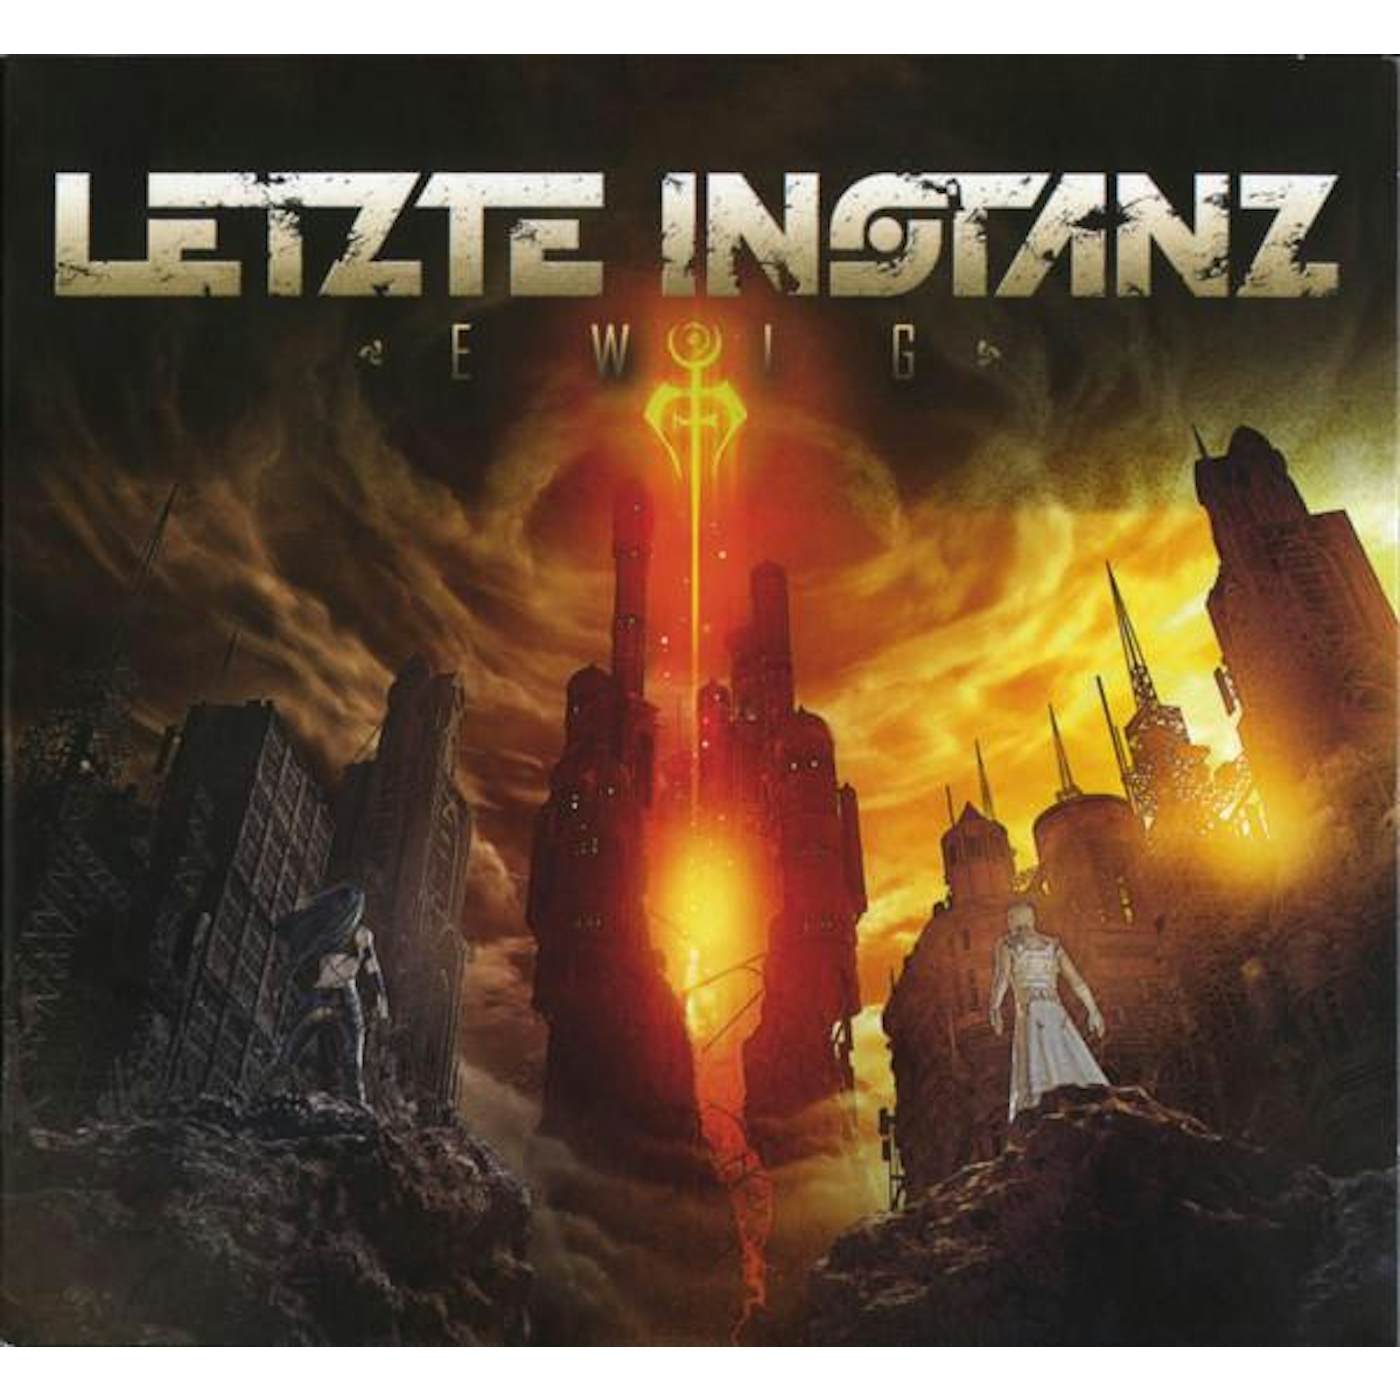 Letzte Instanz EWIG / LTD CD